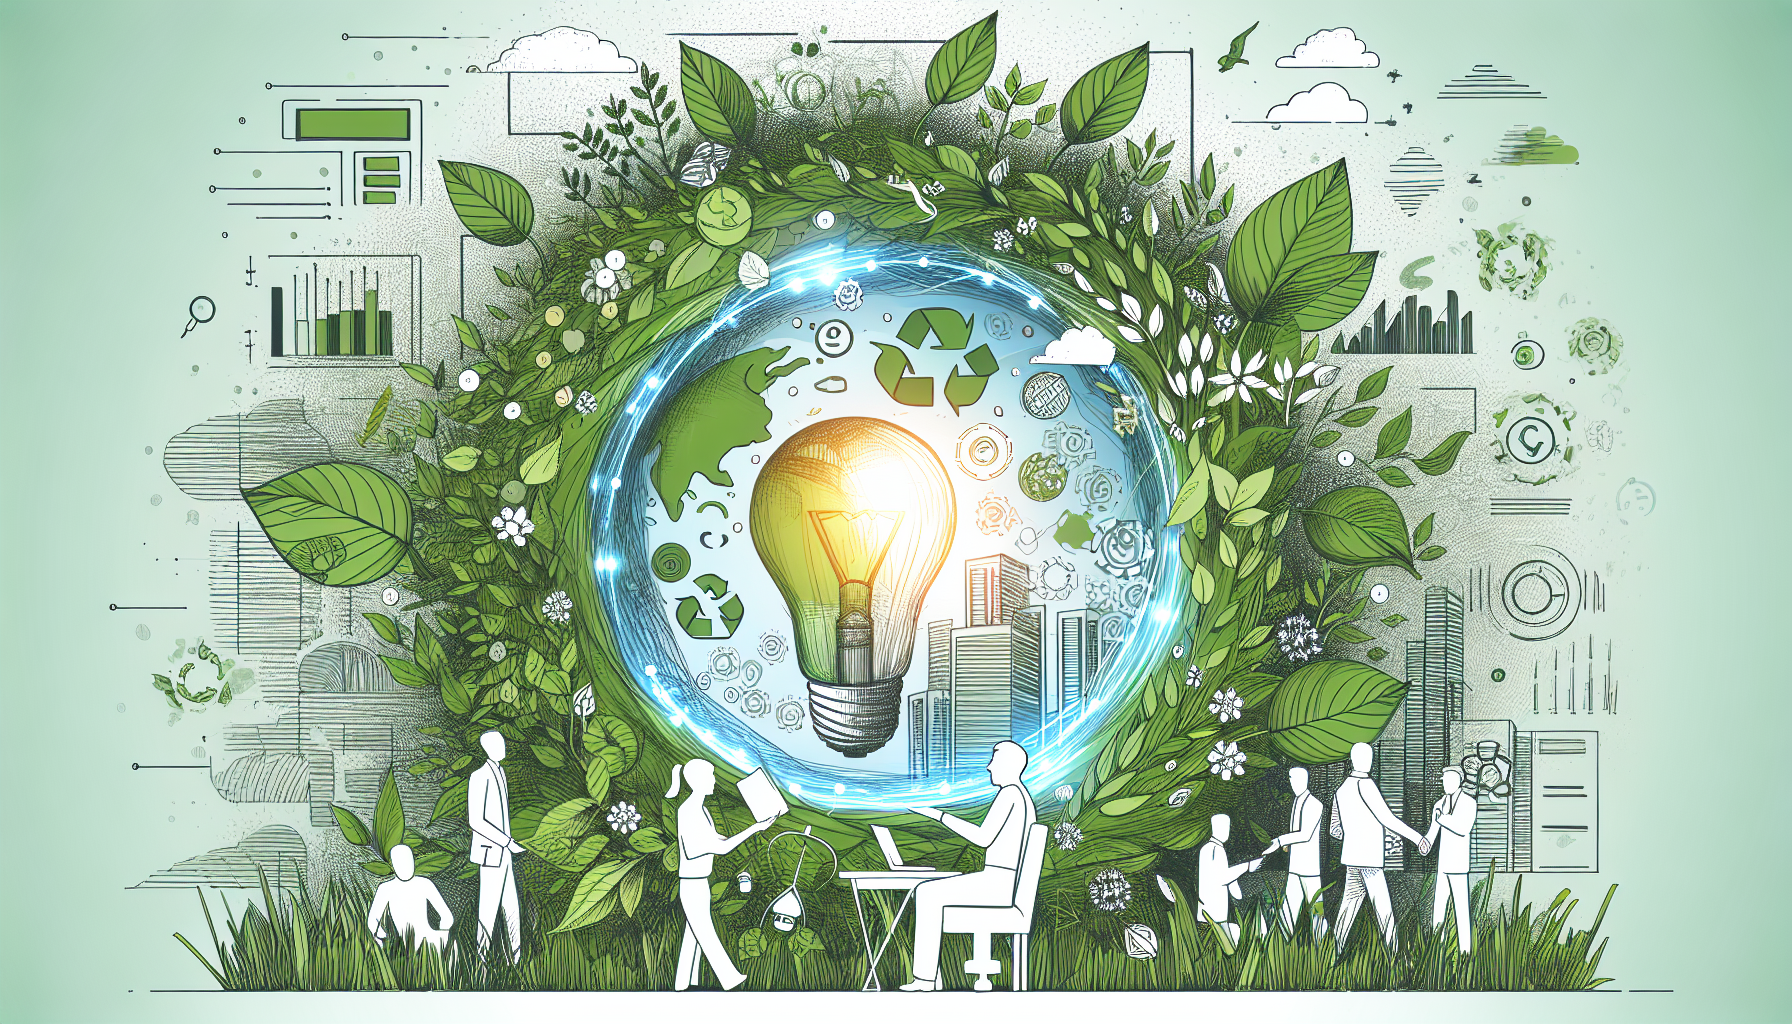 découvrez comment l'éco-innovation révolutionne notre approche commerciale et transforme nos pratiques économiques pour un avenir plus durable.